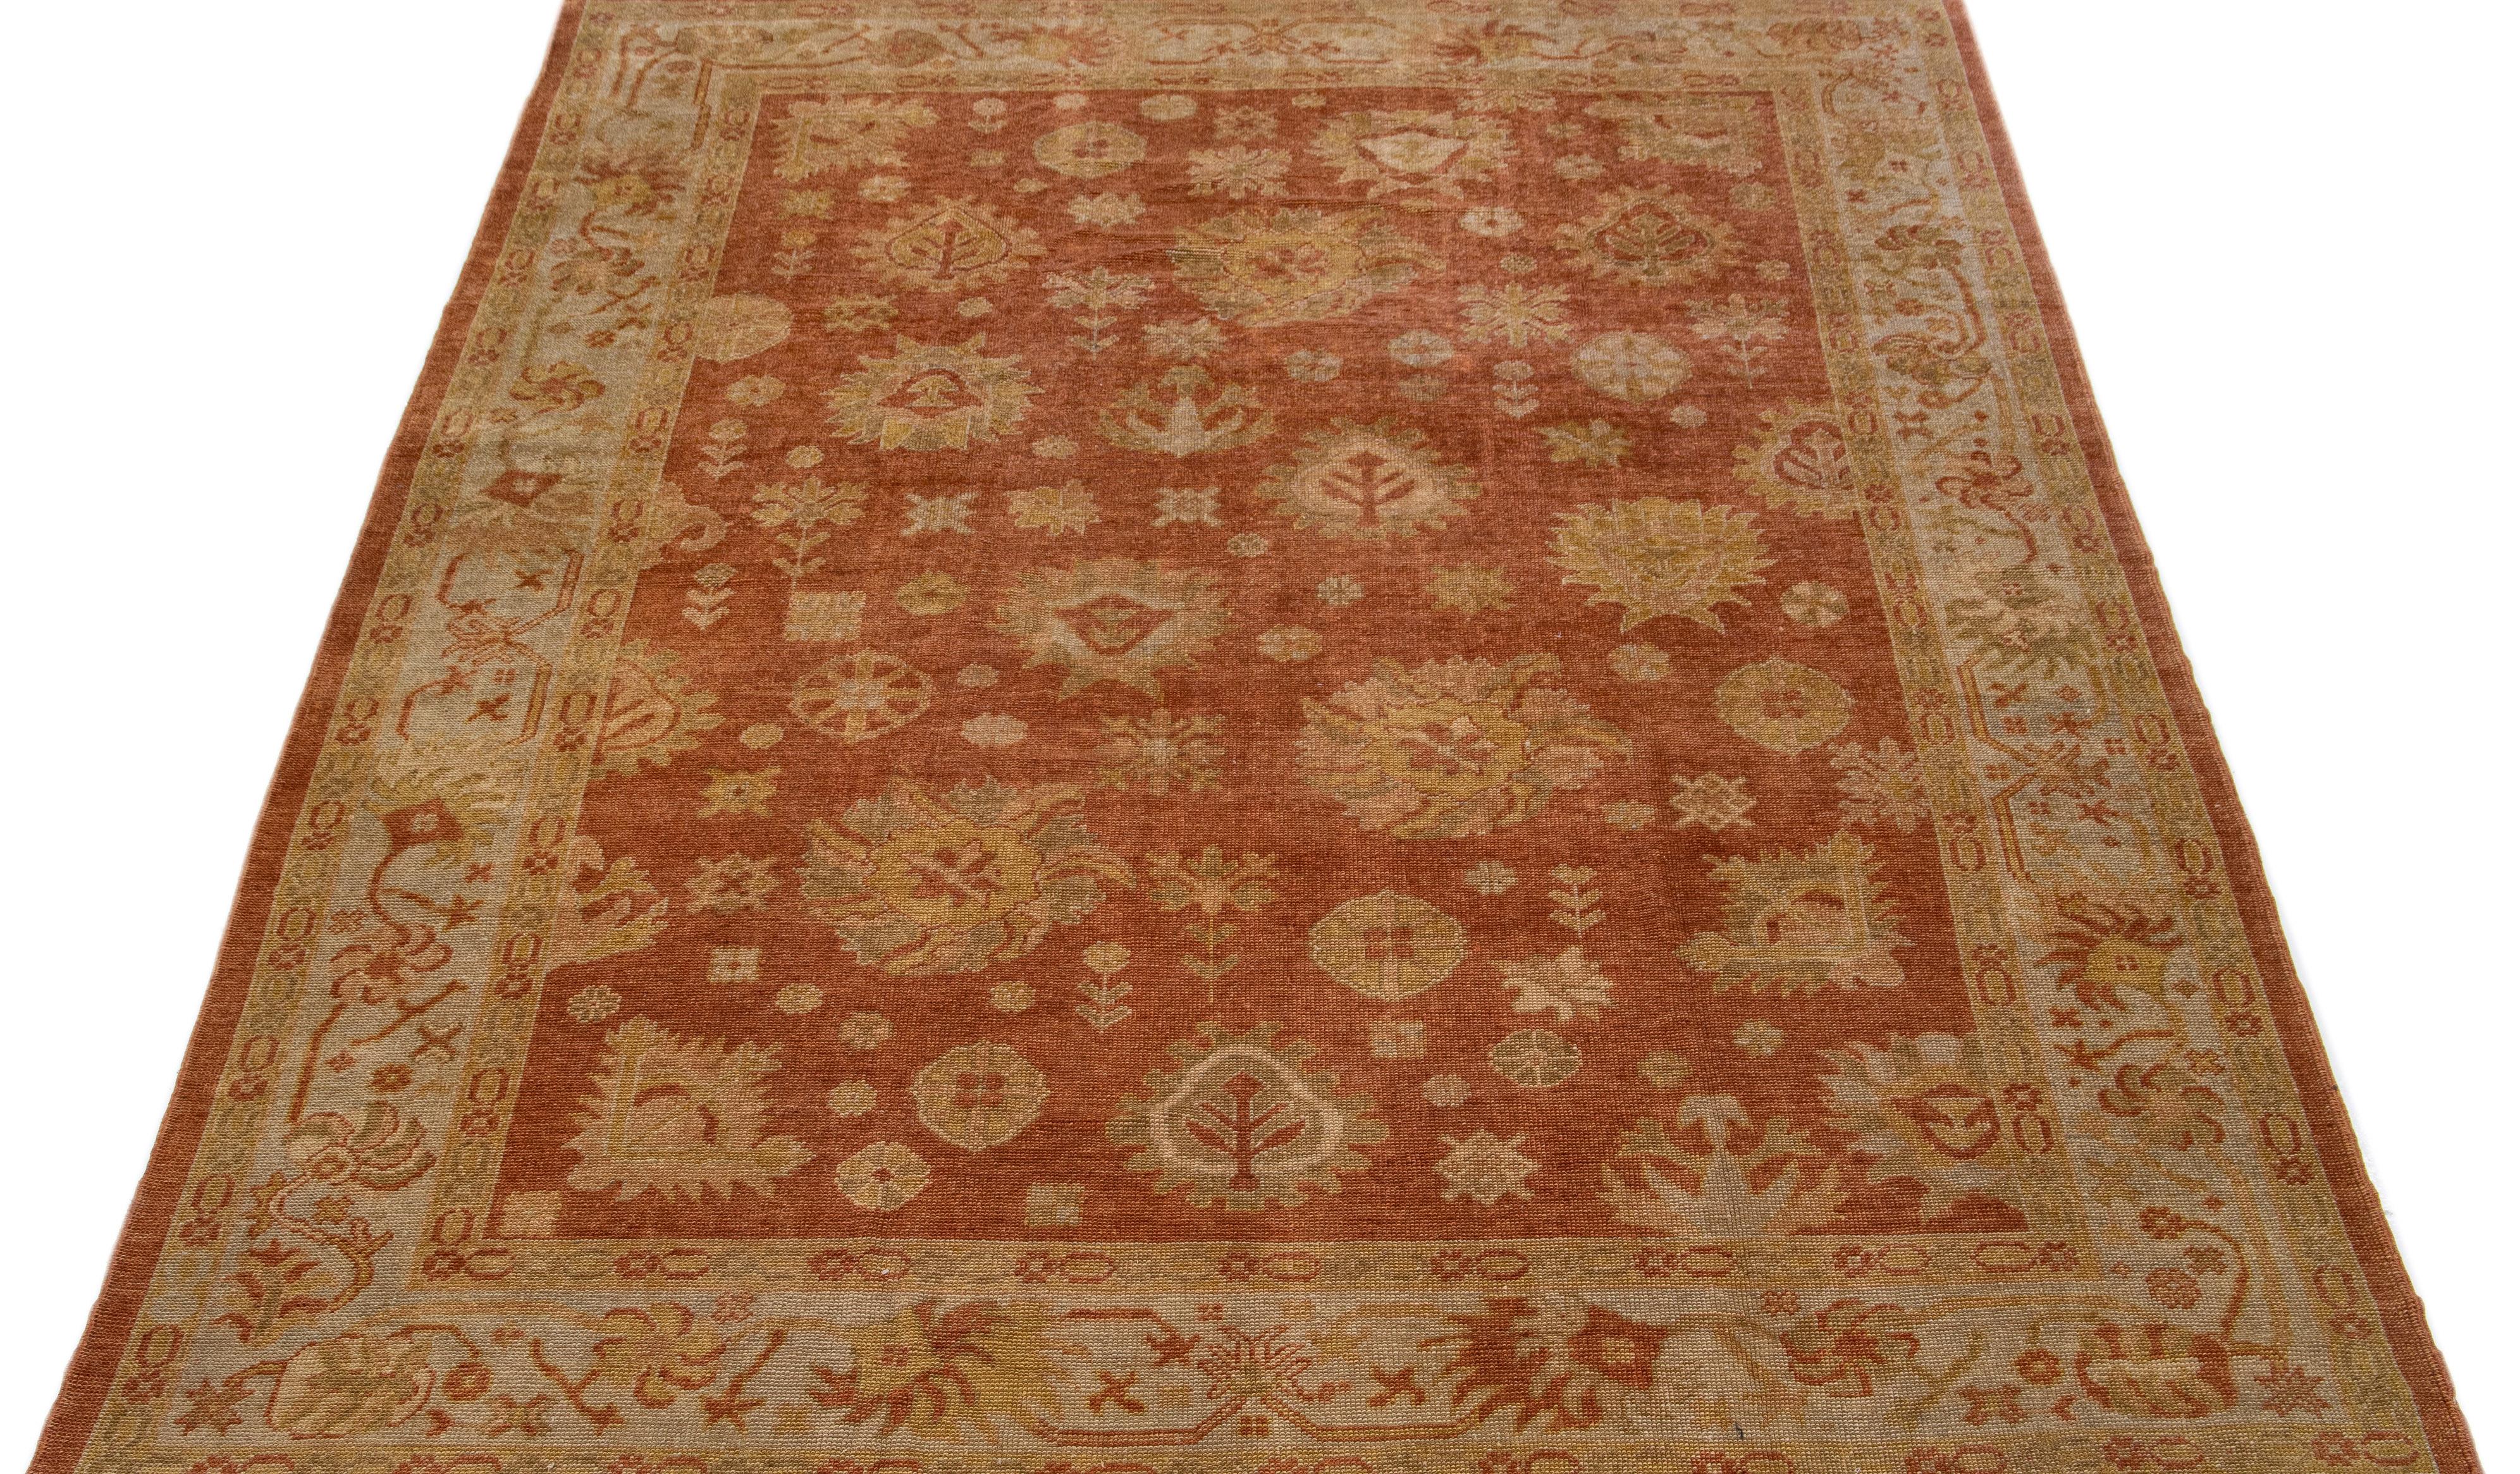 Magnifique tapis turc moderne en laine nouée à la main avec un champ de couleur brun-orange. Ce tapis présente un cadre gris avec des accents de vert et de jaune dans un magnifique motif floral géométrique sur toute la surface.

Ce tapis mesure :